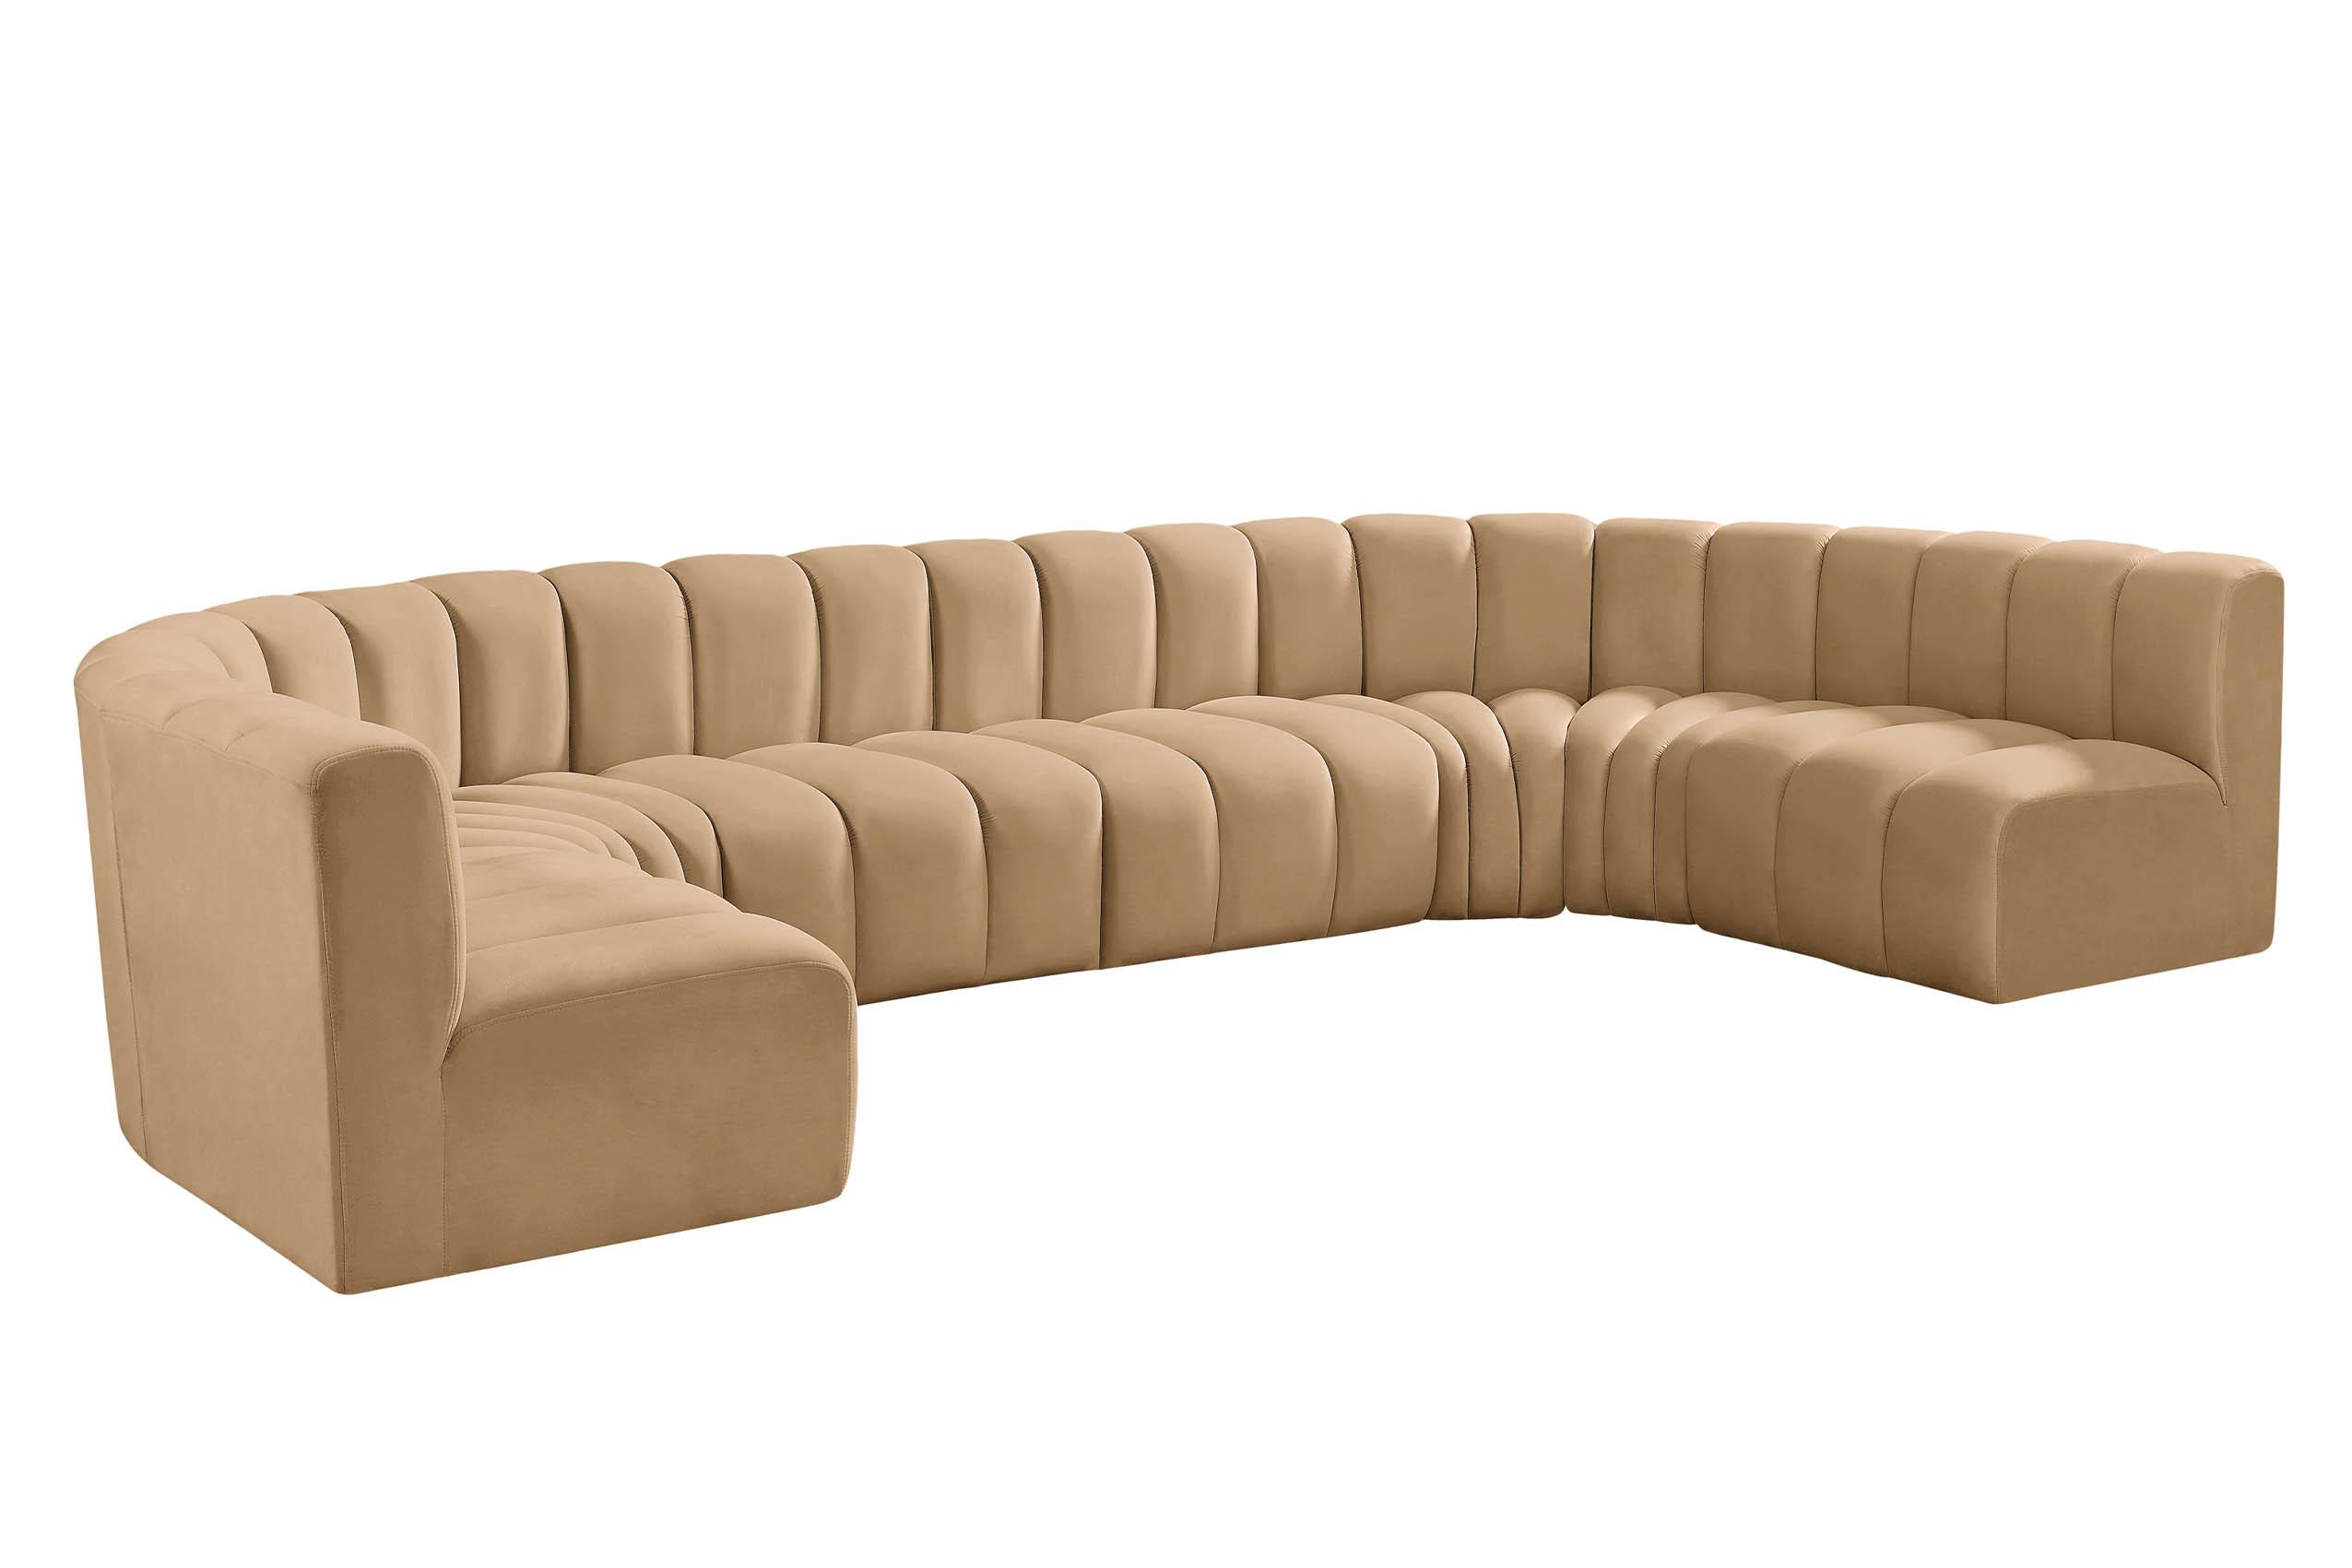 Contemporary, Modern Modular Sectional Sofa ARC 103Camel-S8A 103Camel-S8A in Camel Velvet